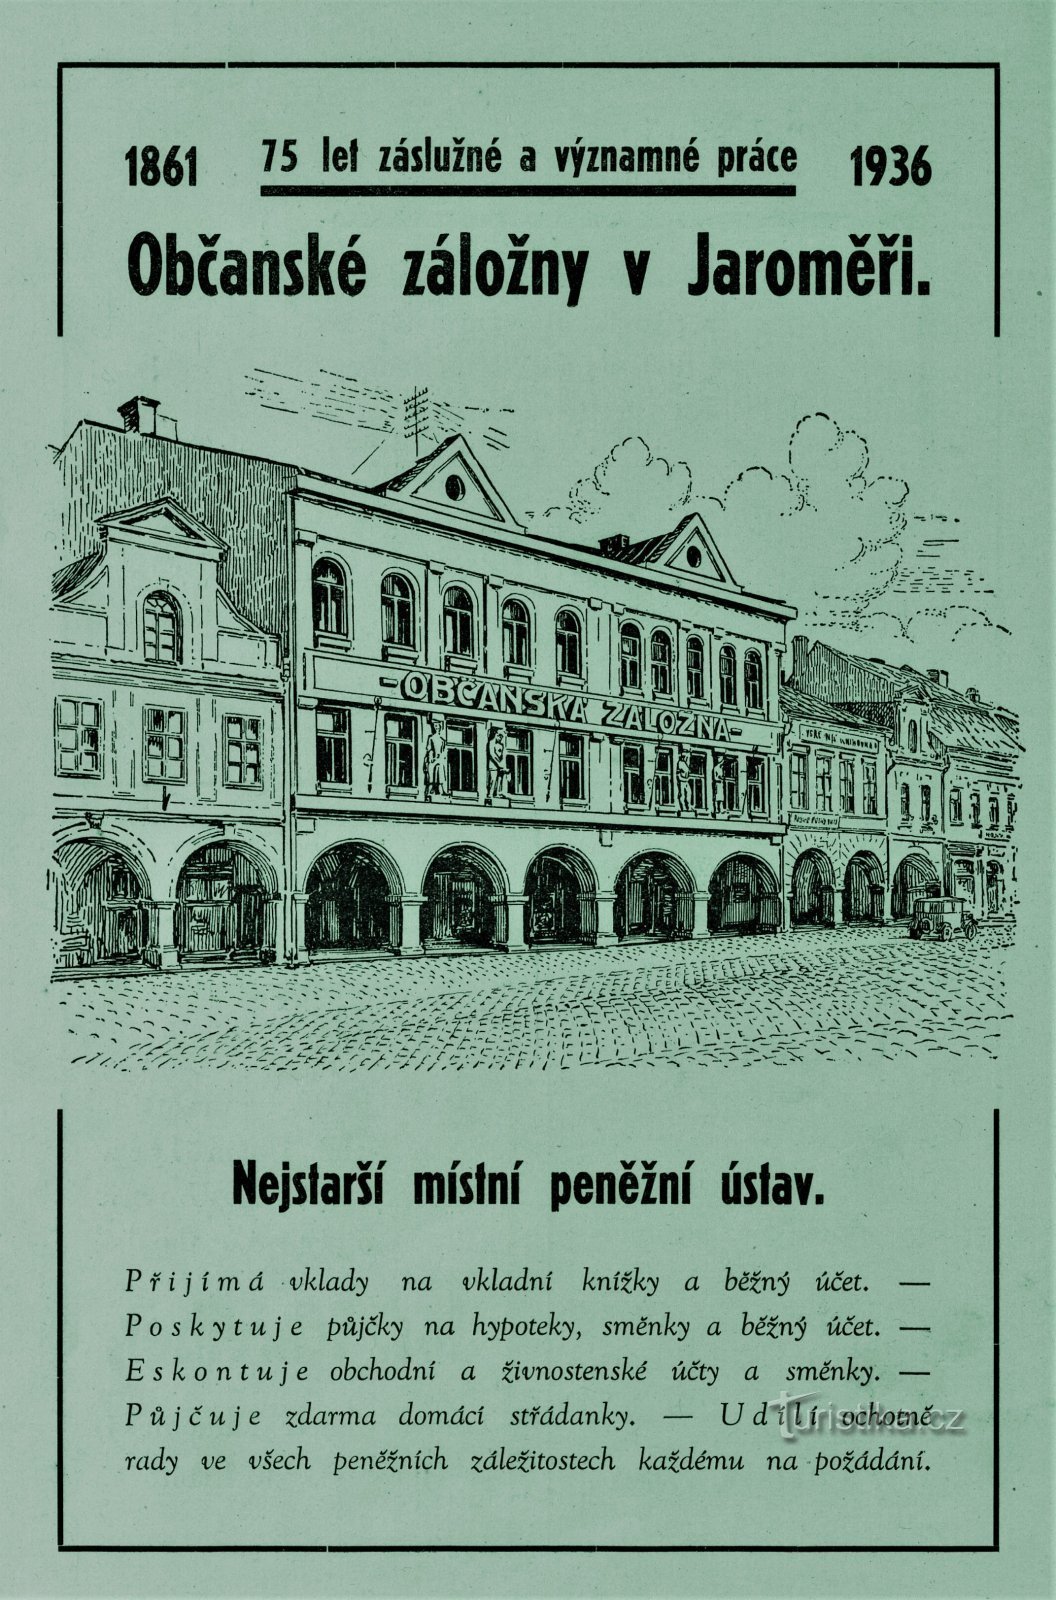 Publicité contemporaine de la Caisse d'épargne civique à Jaroměř de 1936